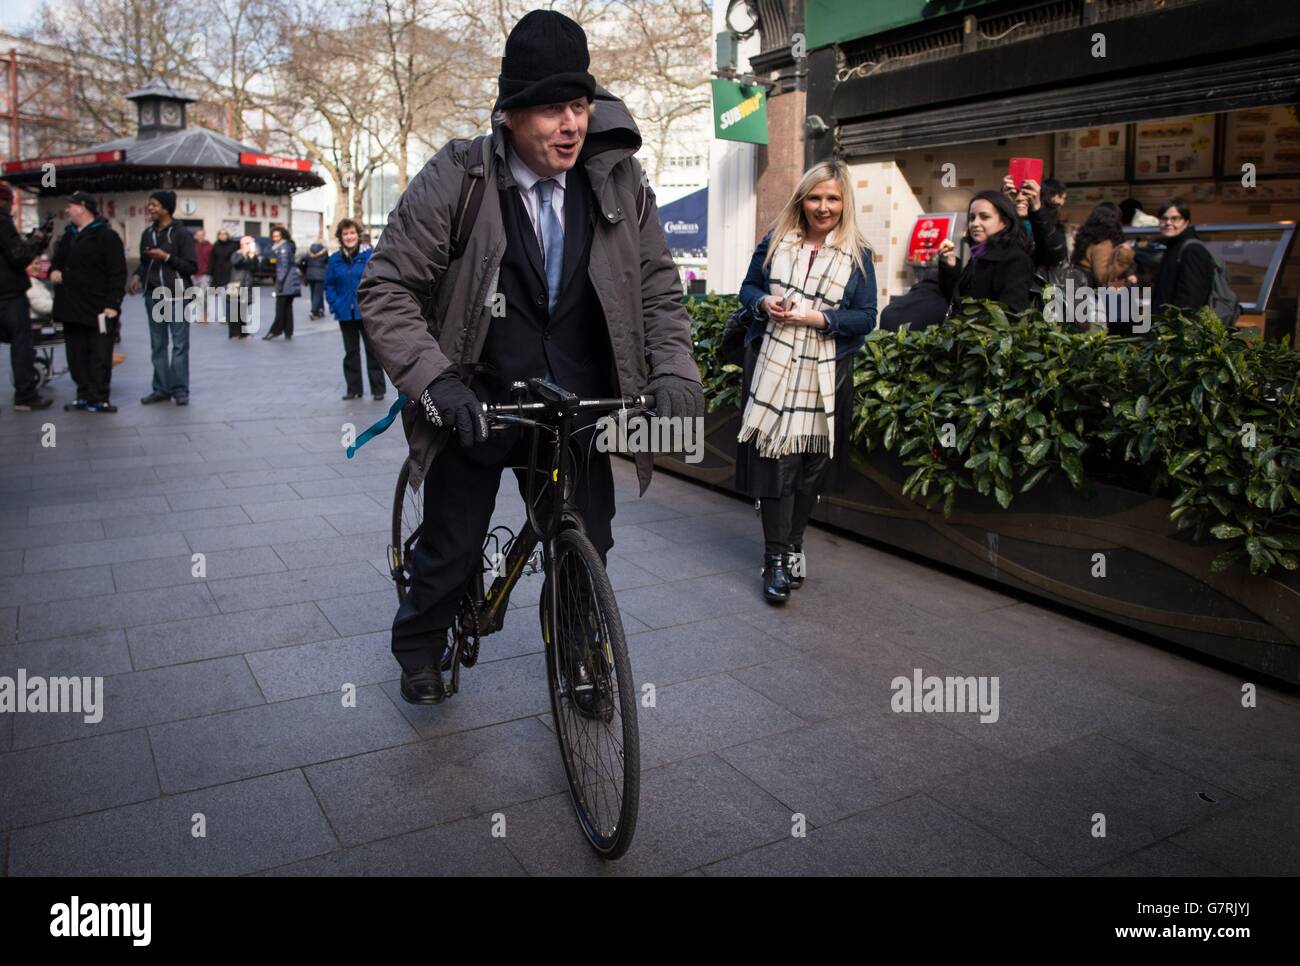 Sindaco di Londra Boris Johnson in bicicletta, lasciando gli studi della Global radio nel centro di Londra, dopo aver presentato regolarmente il suo programma telefonico per la radio LBC, dopo che David Cameron ha commentato che sta escludendo un terzo mandato come primo Ministro. Foto Stock